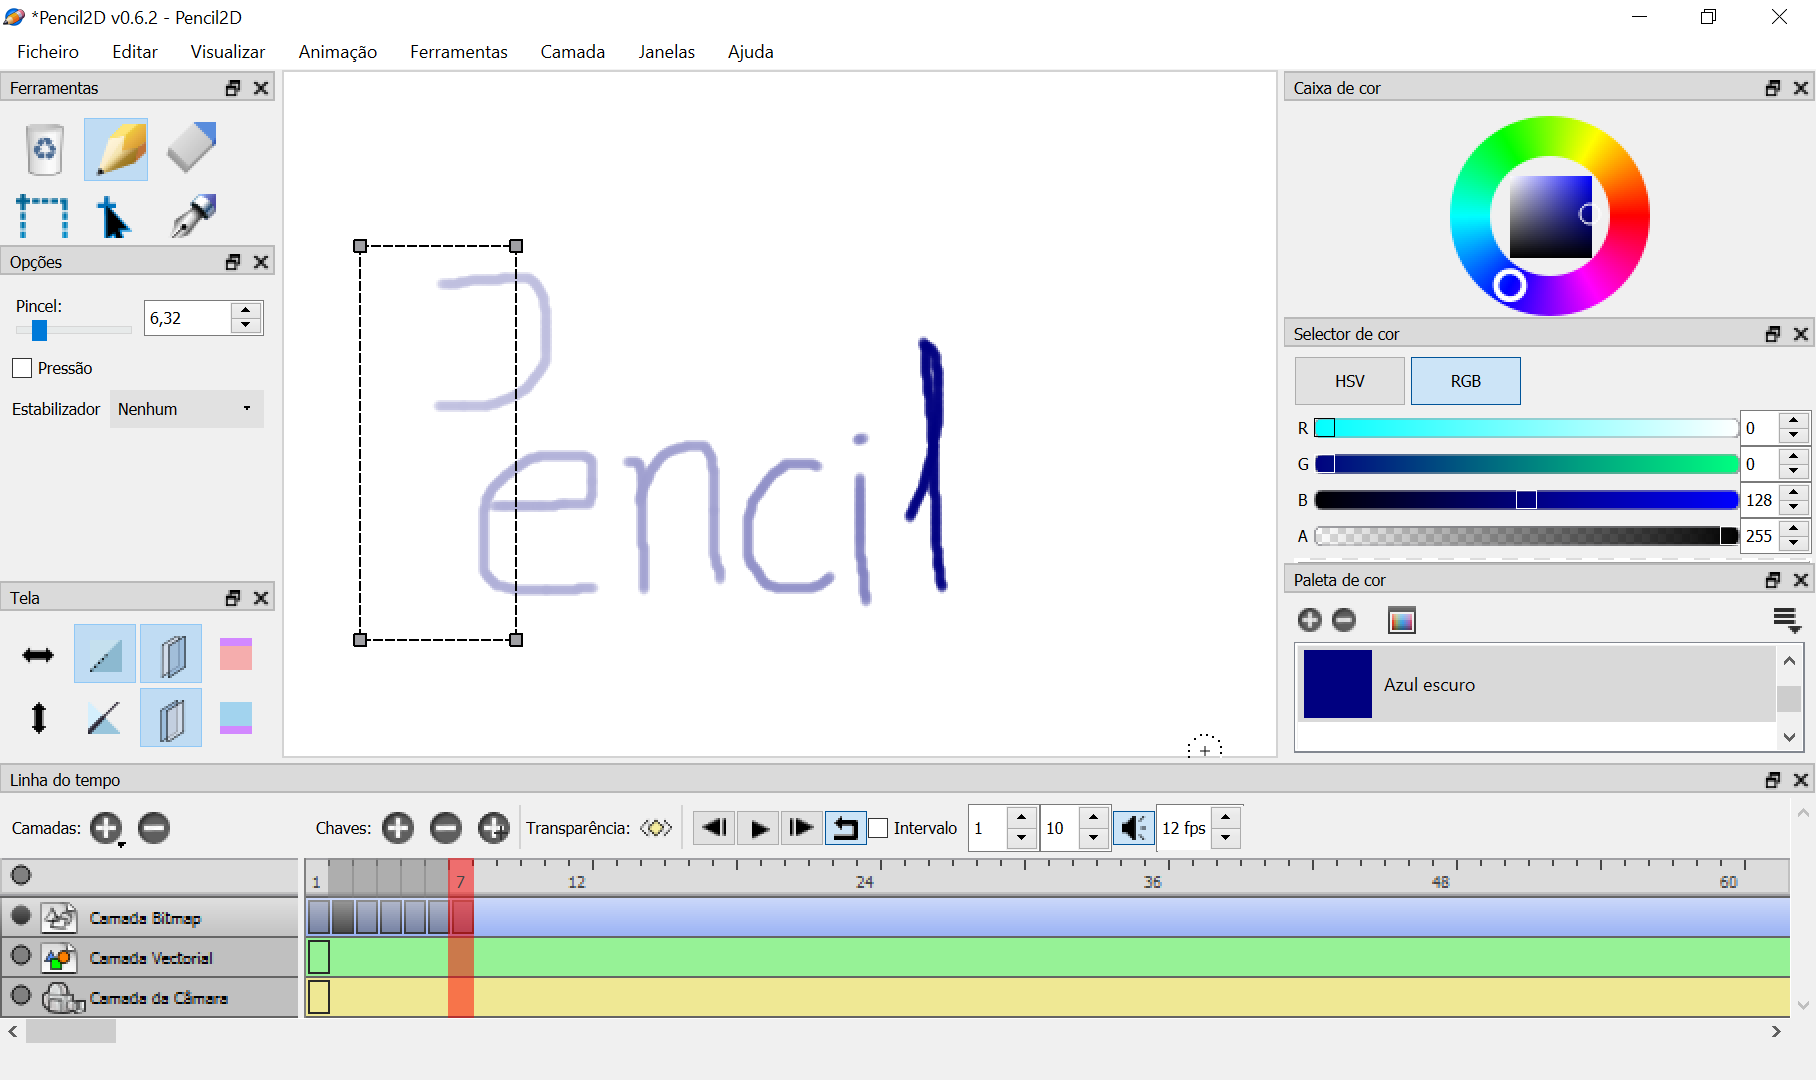 Pencil 2D Animation - Ecrã da aplicação em utilização 